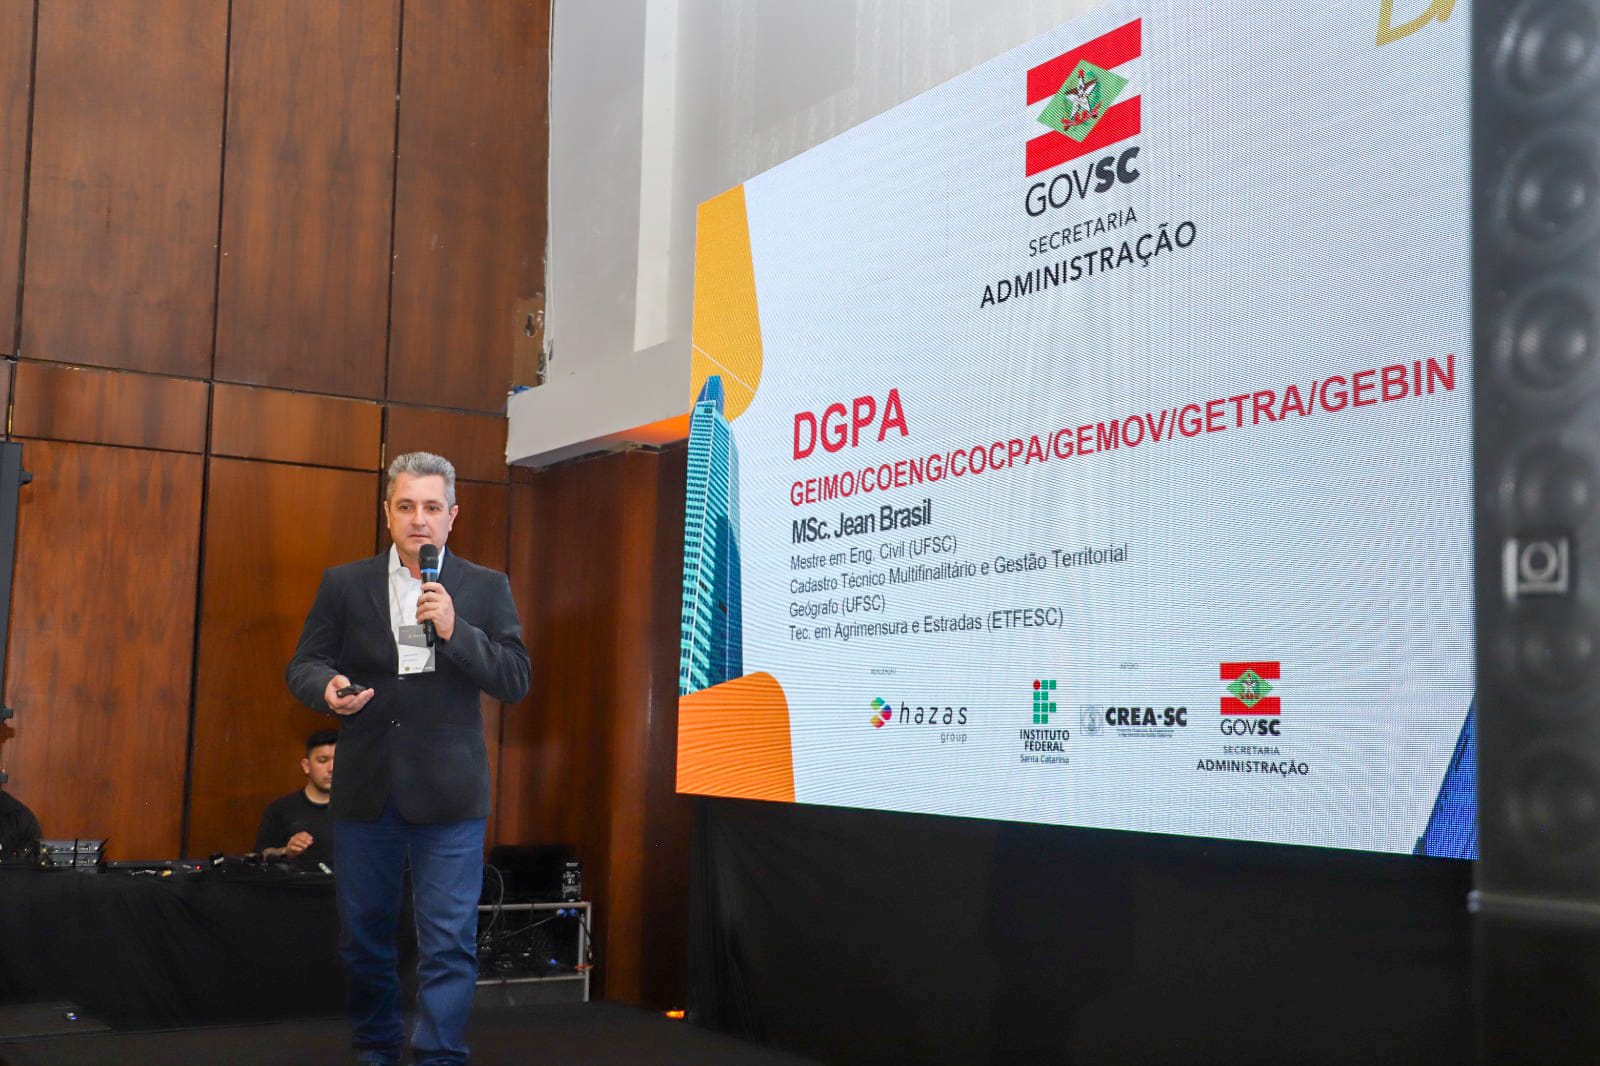 O Governo do Estado de Santa Catarina lidera a gestão de dados geodésicos com pioneirismo